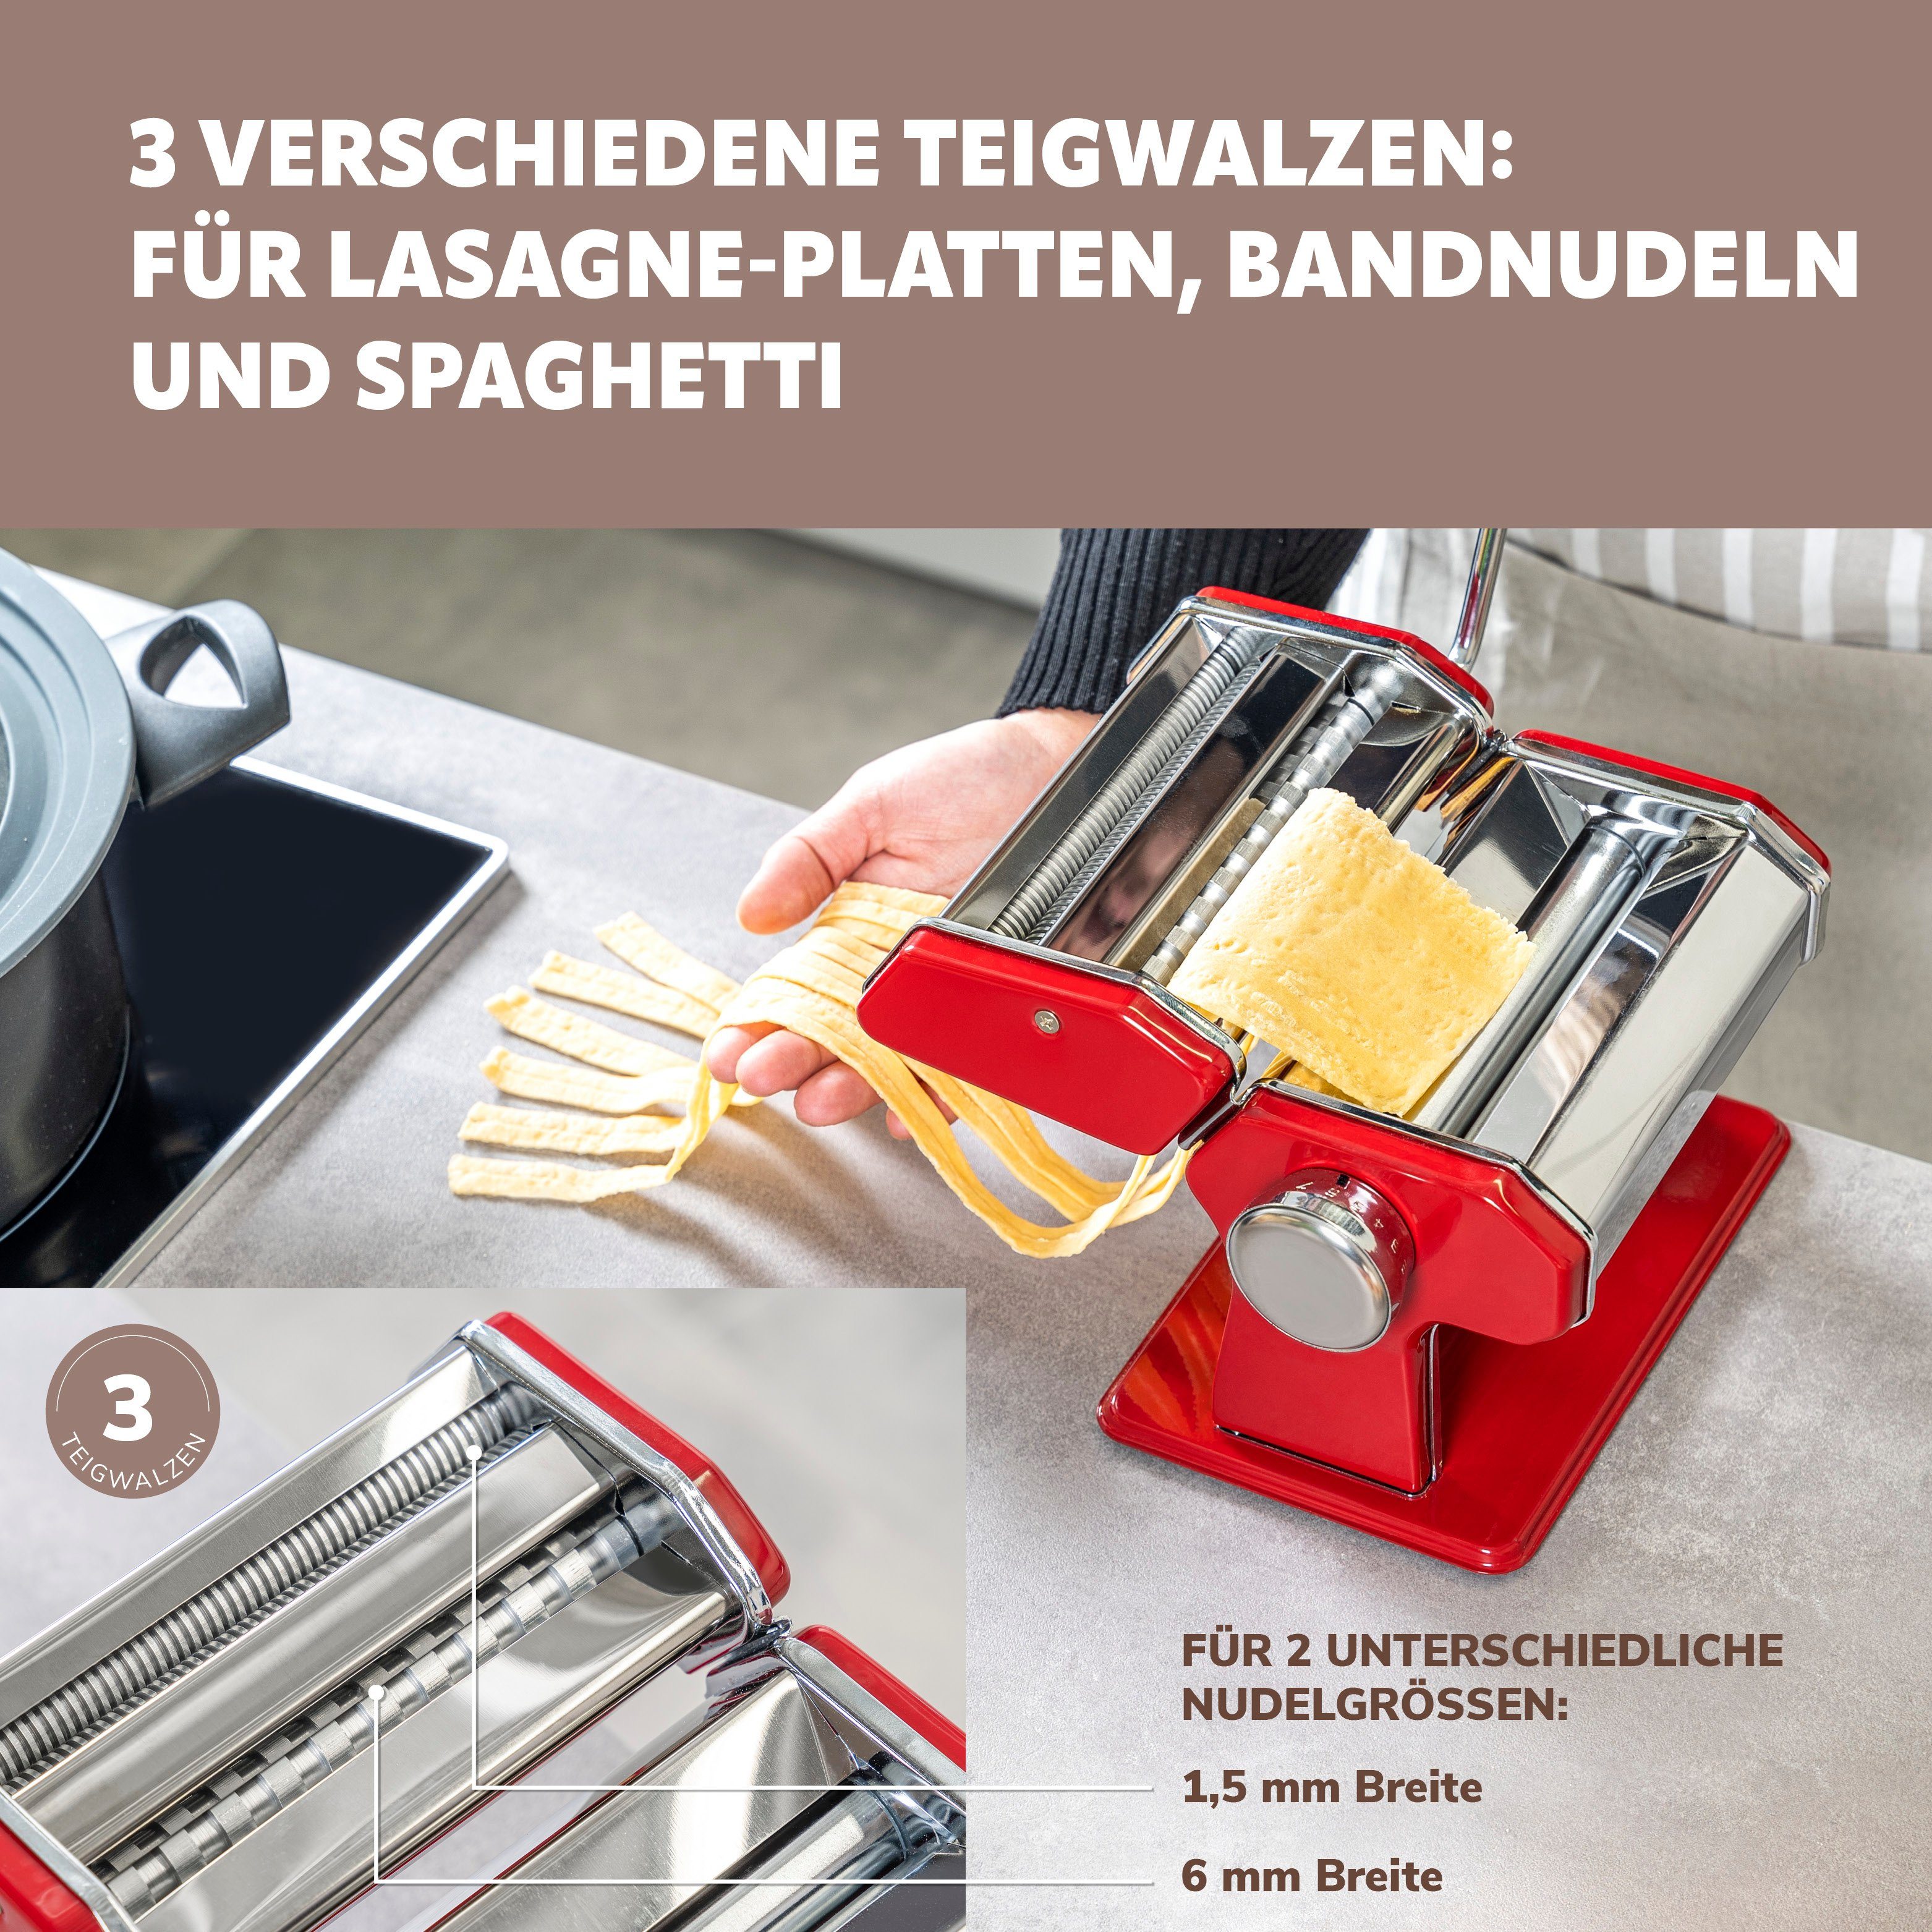 bremermann - Pasta, Nudelmaschine Edelstahl Nudelmaschine bremermann Stufen, rot Edelstahl/Metall Spaghetti, 7 für